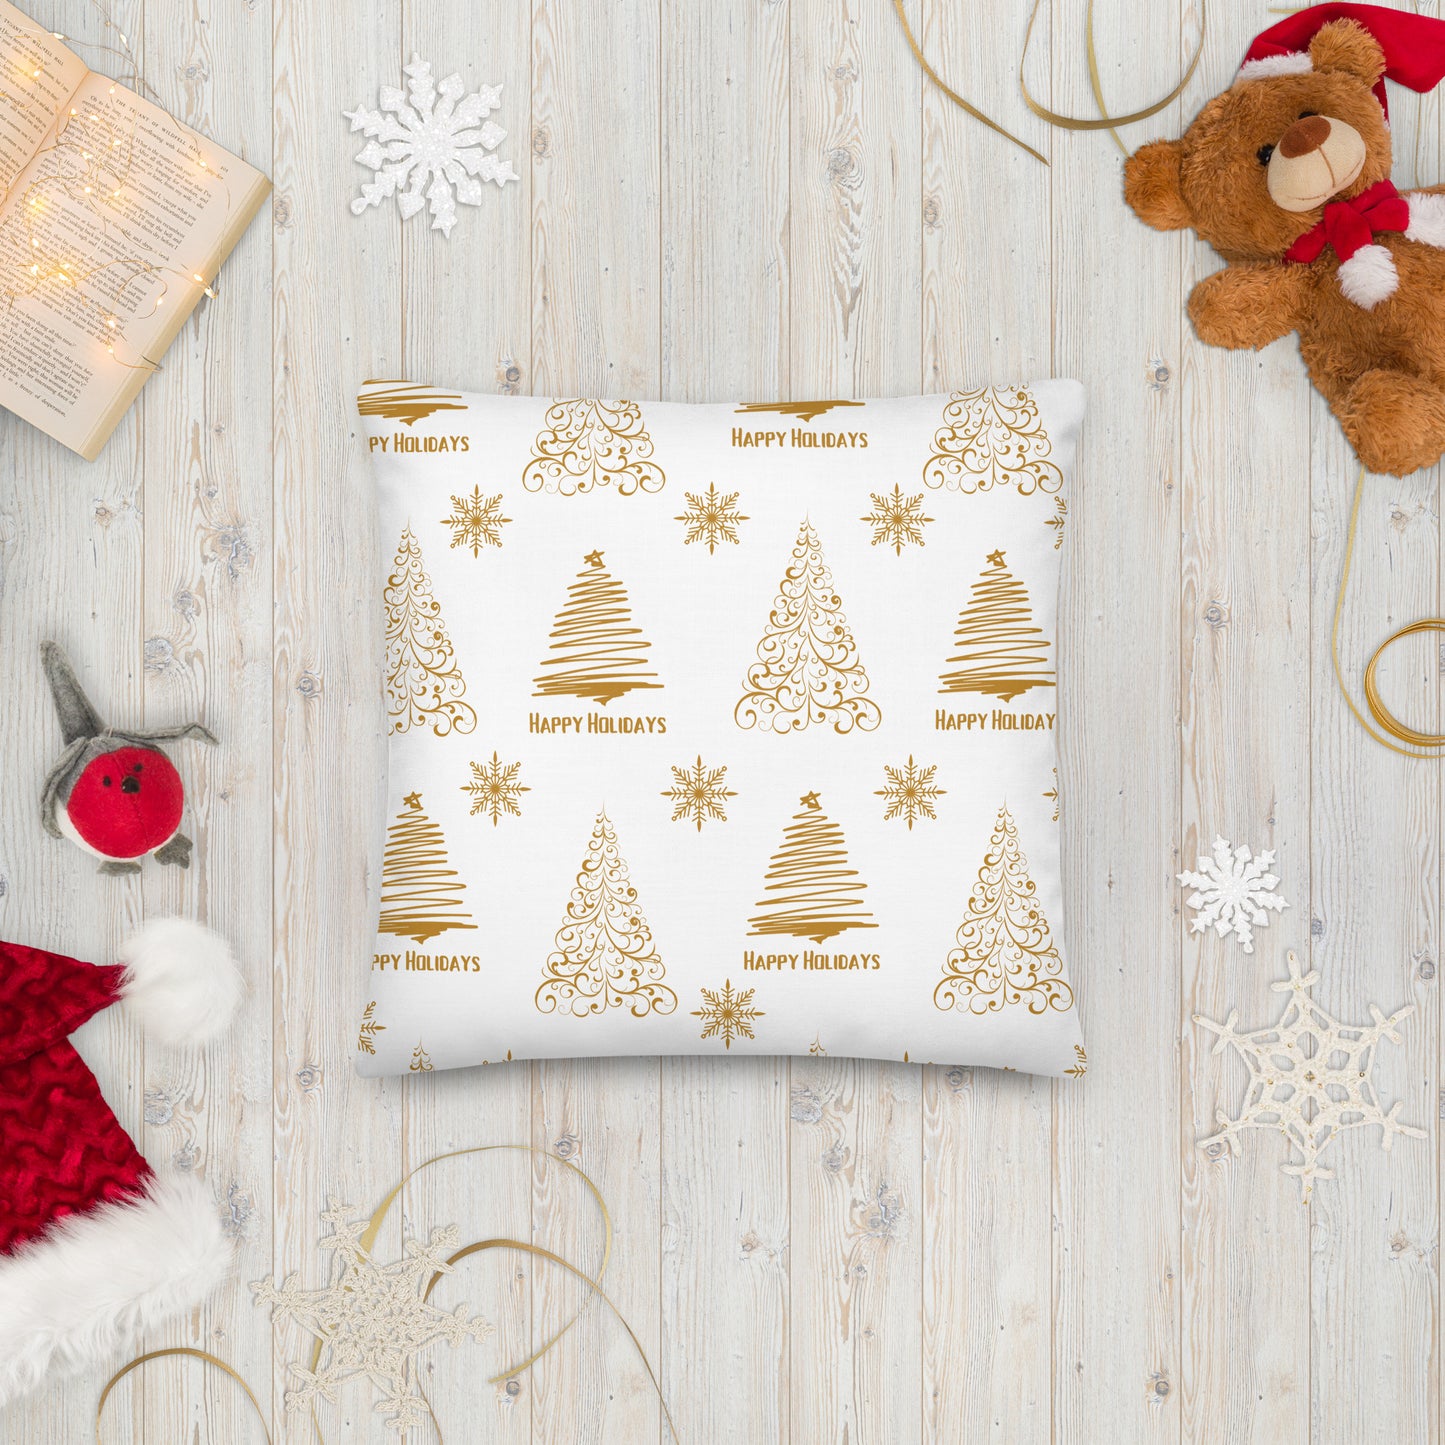 White Golden Christmas Tree Premium Pillow